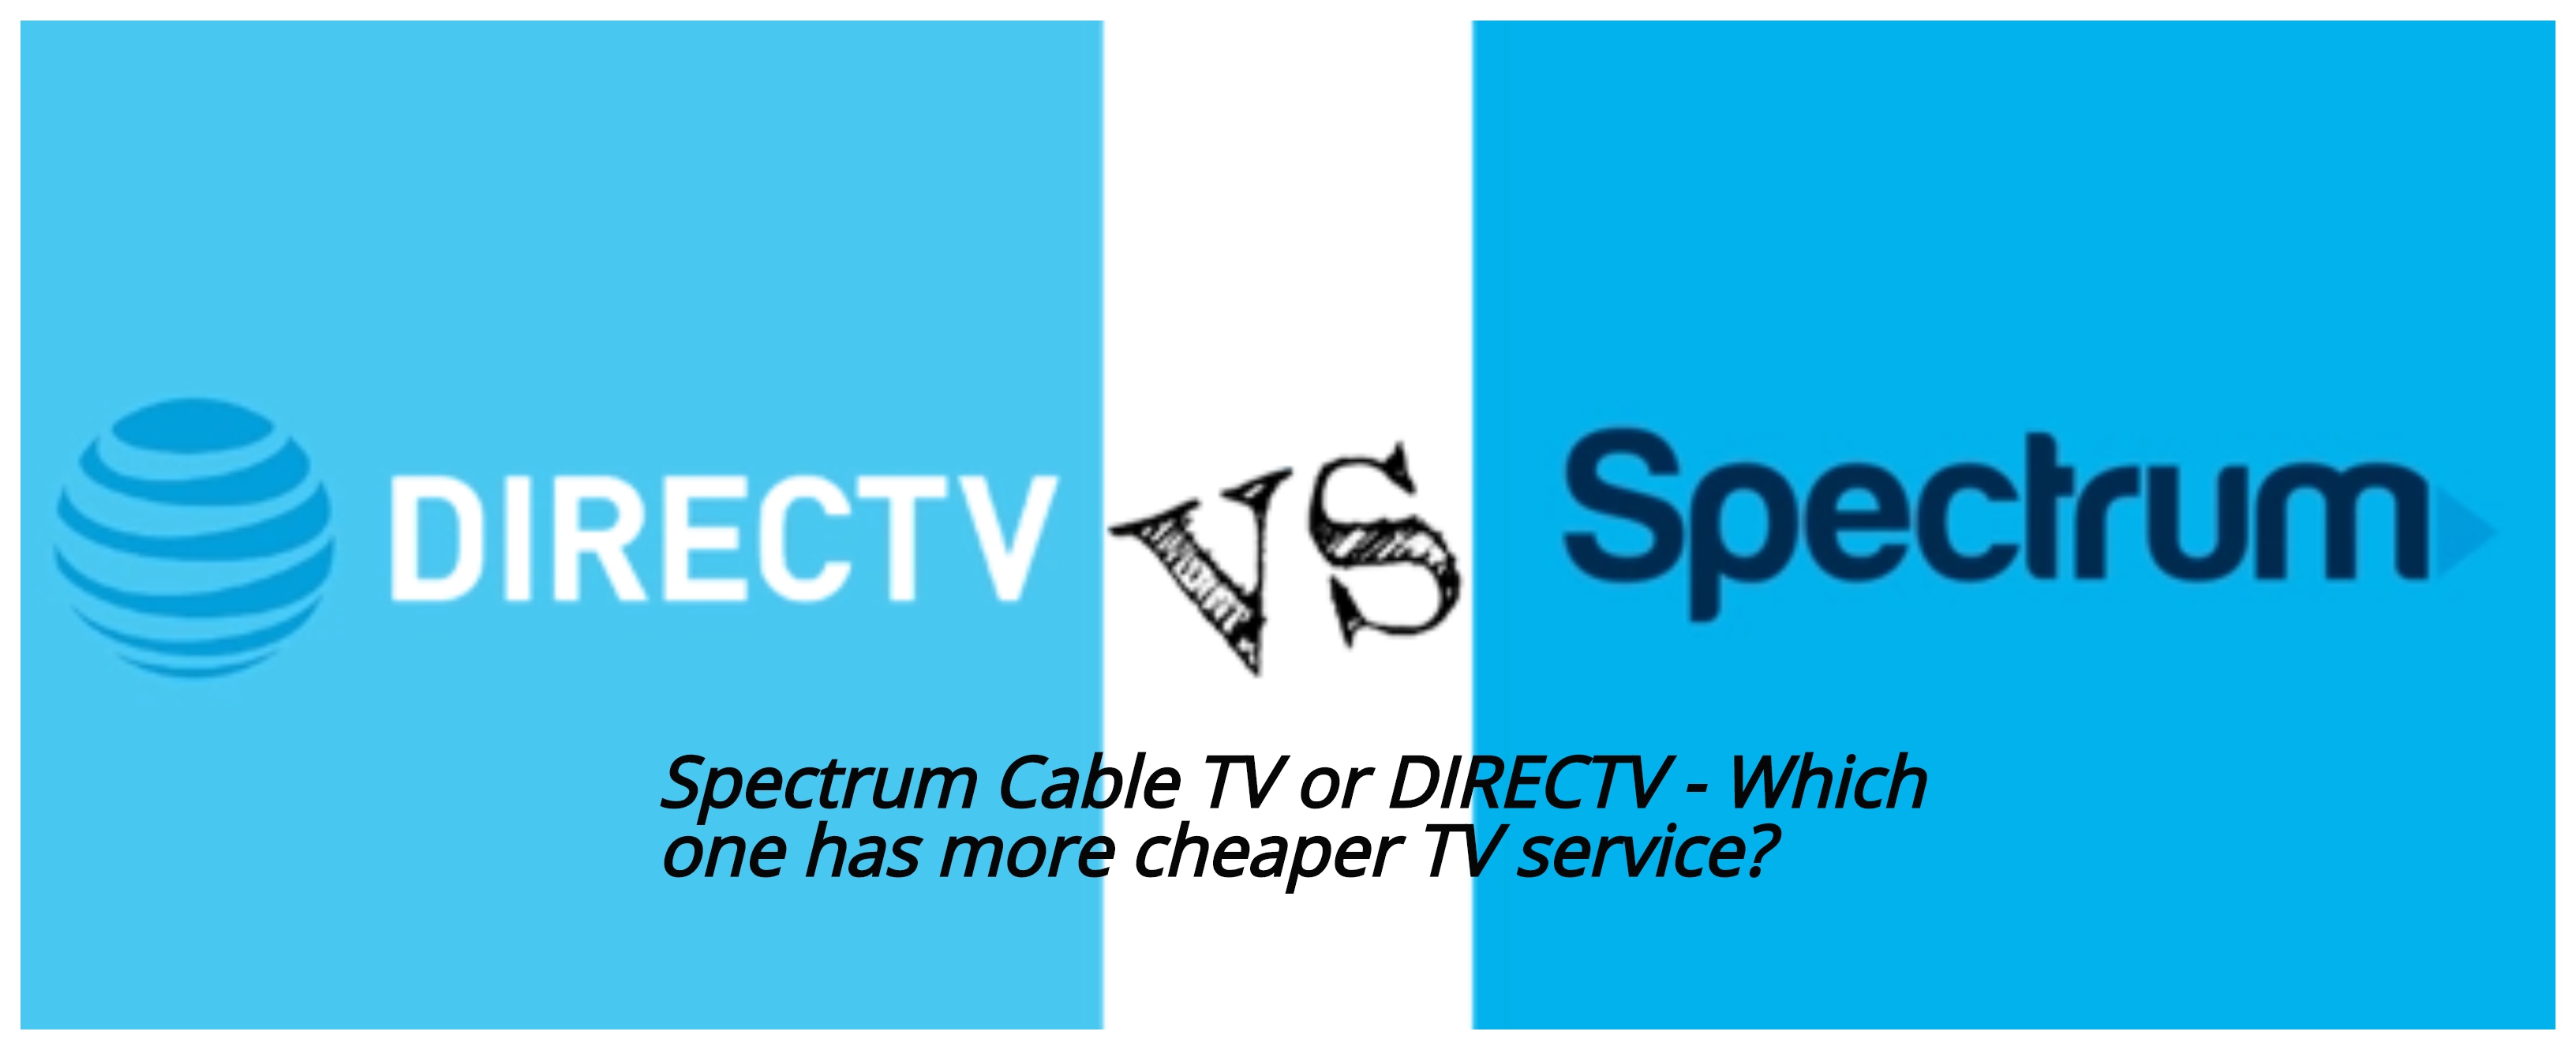 spectrum tv login